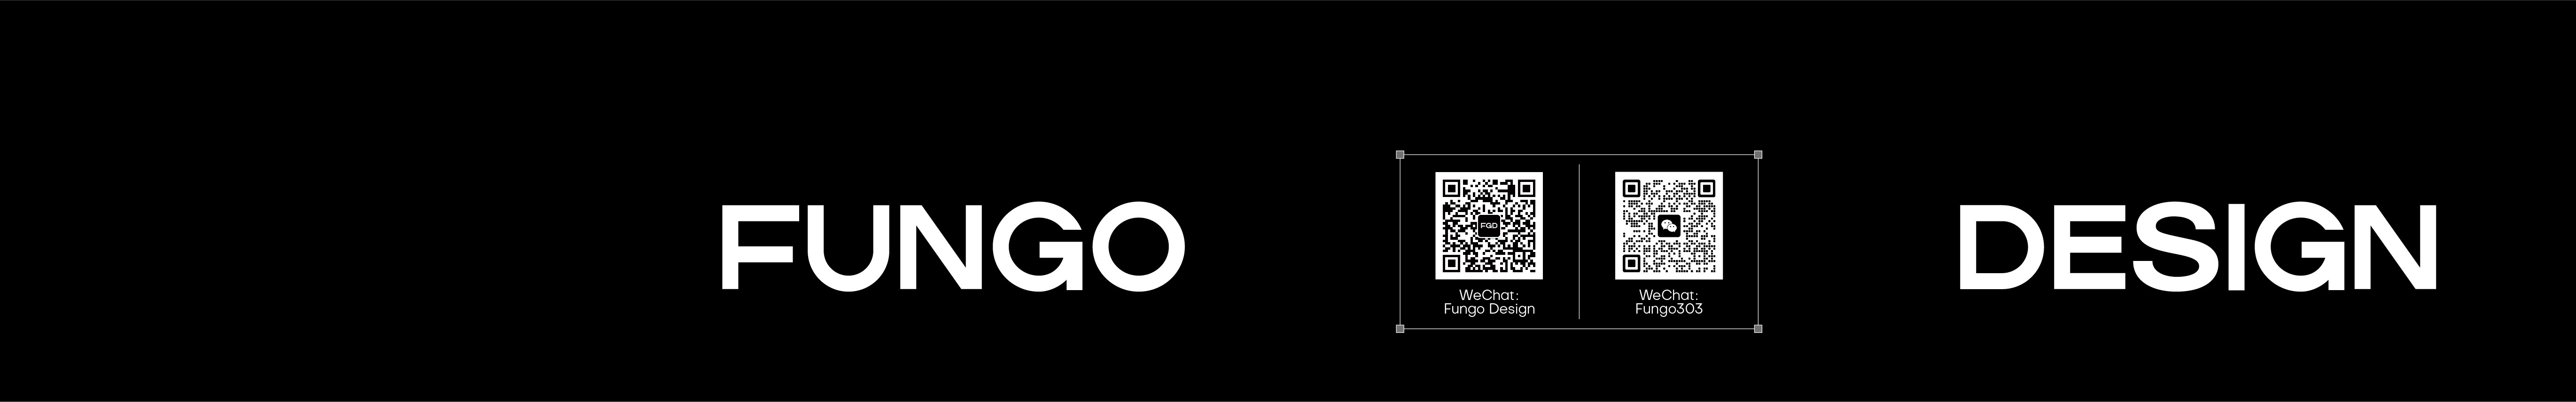 Fungo Design's profile banner